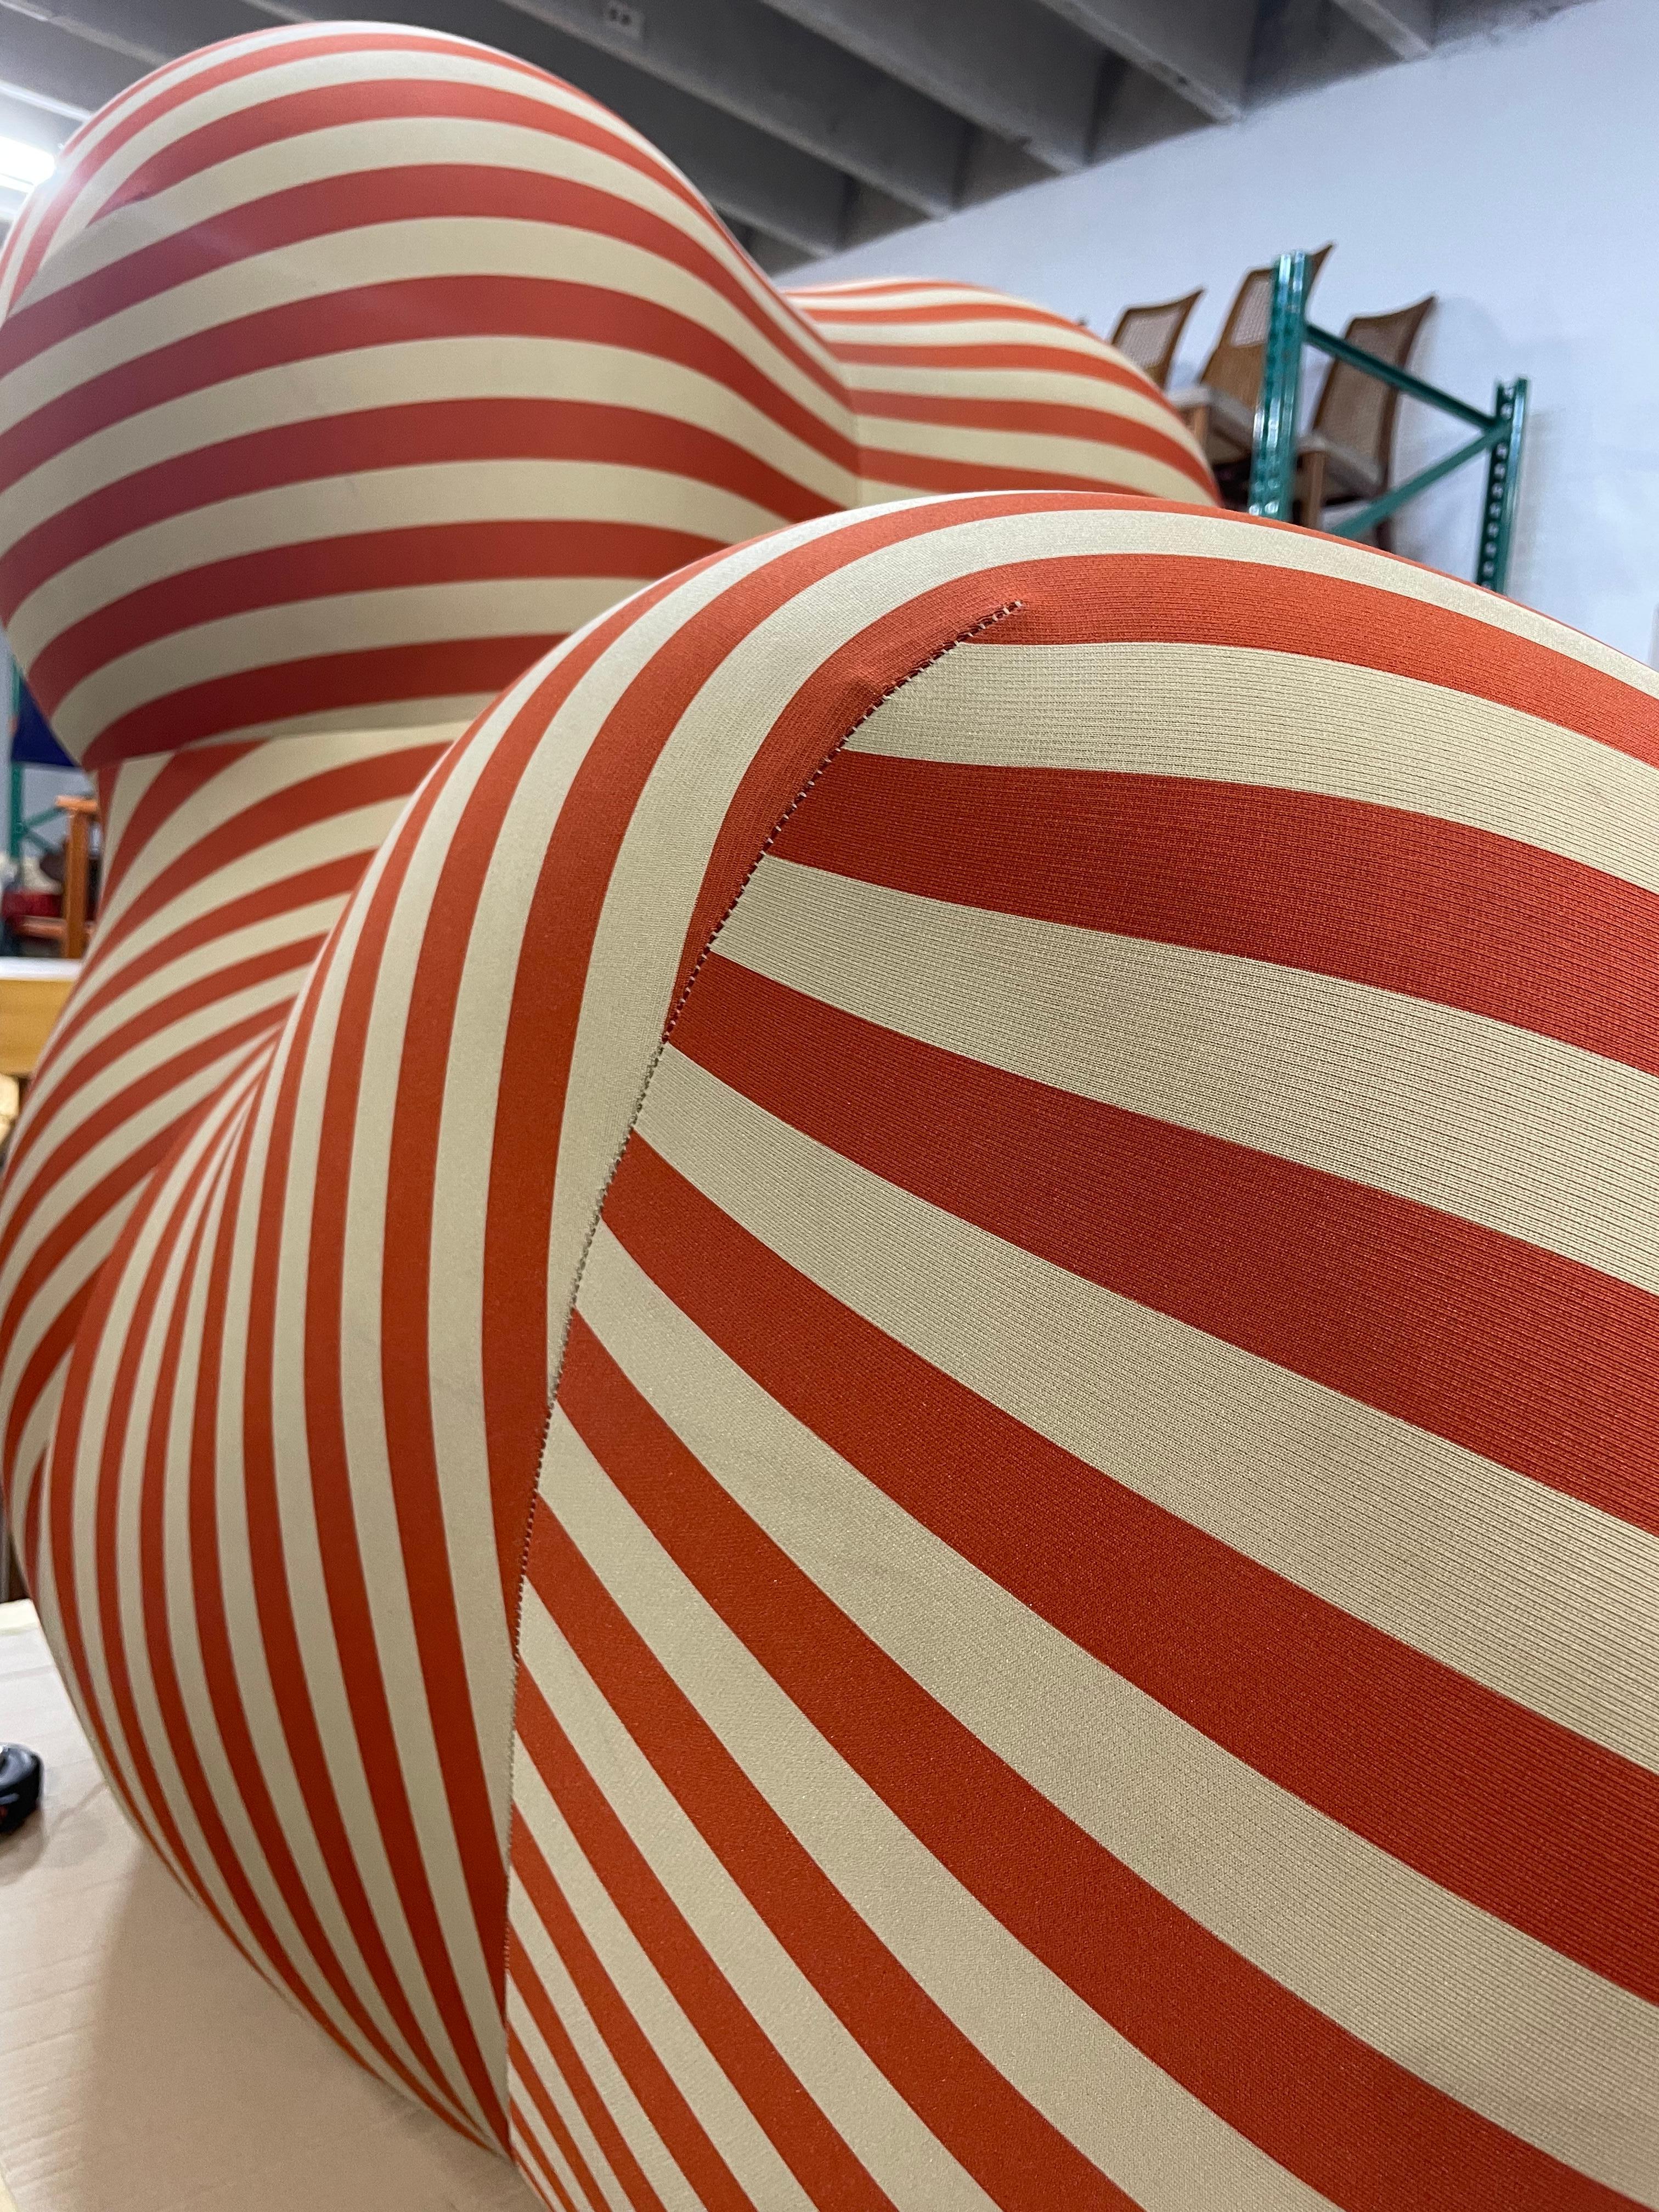 italian striped chair bulbous